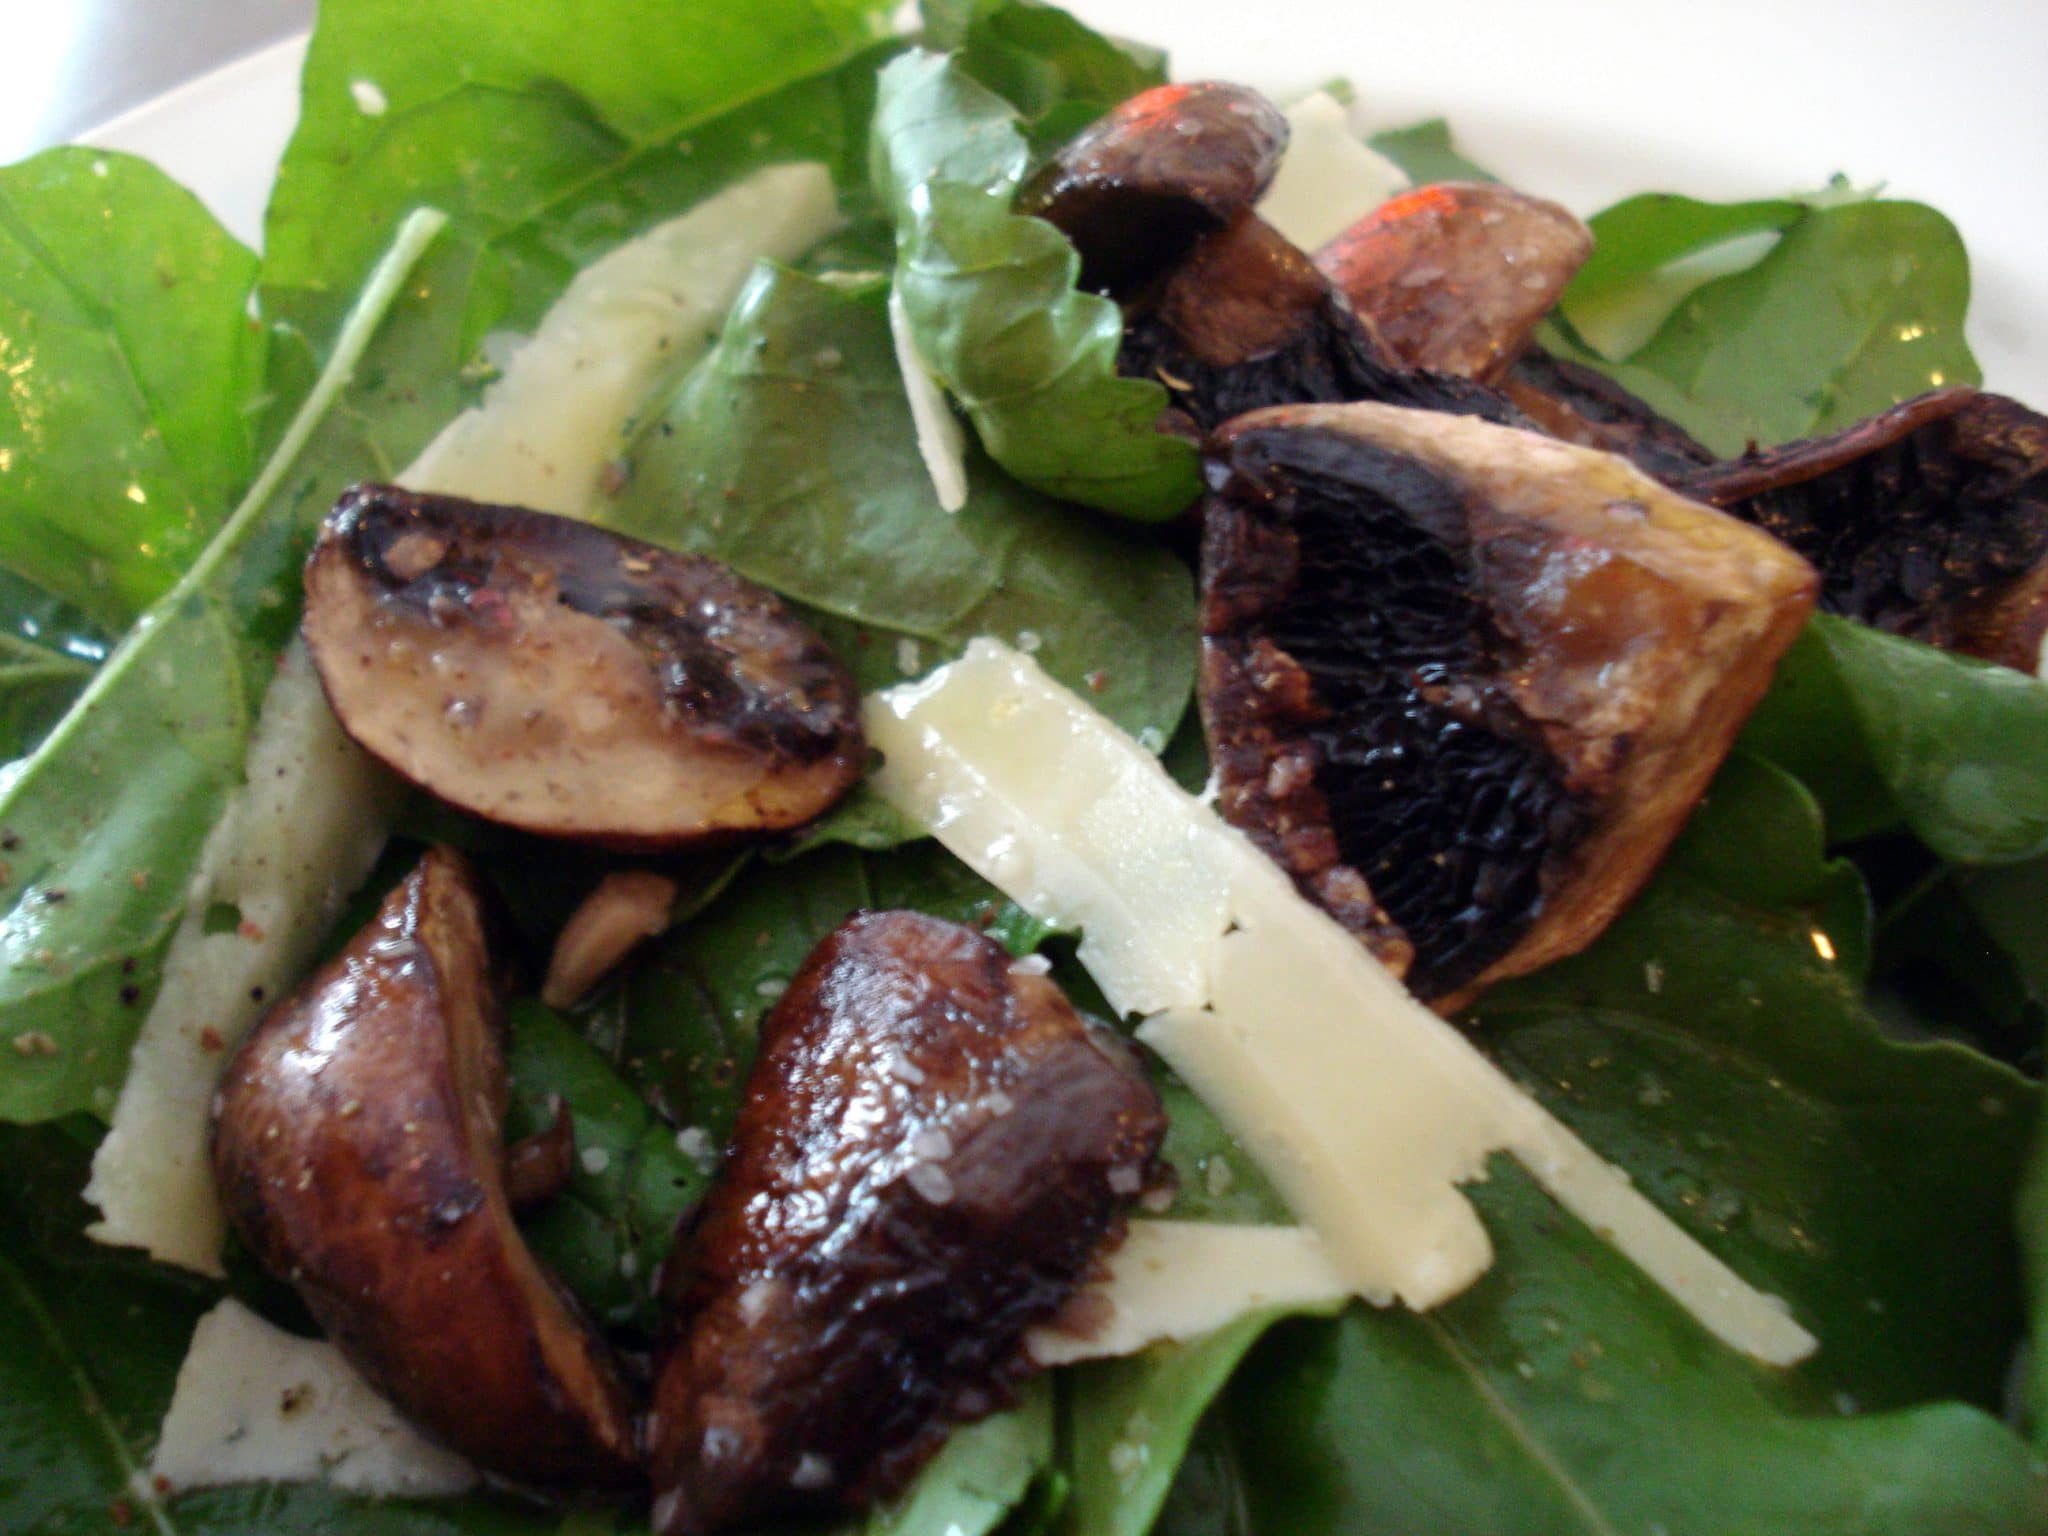 Salad closeup; mushrooms and baby spinach